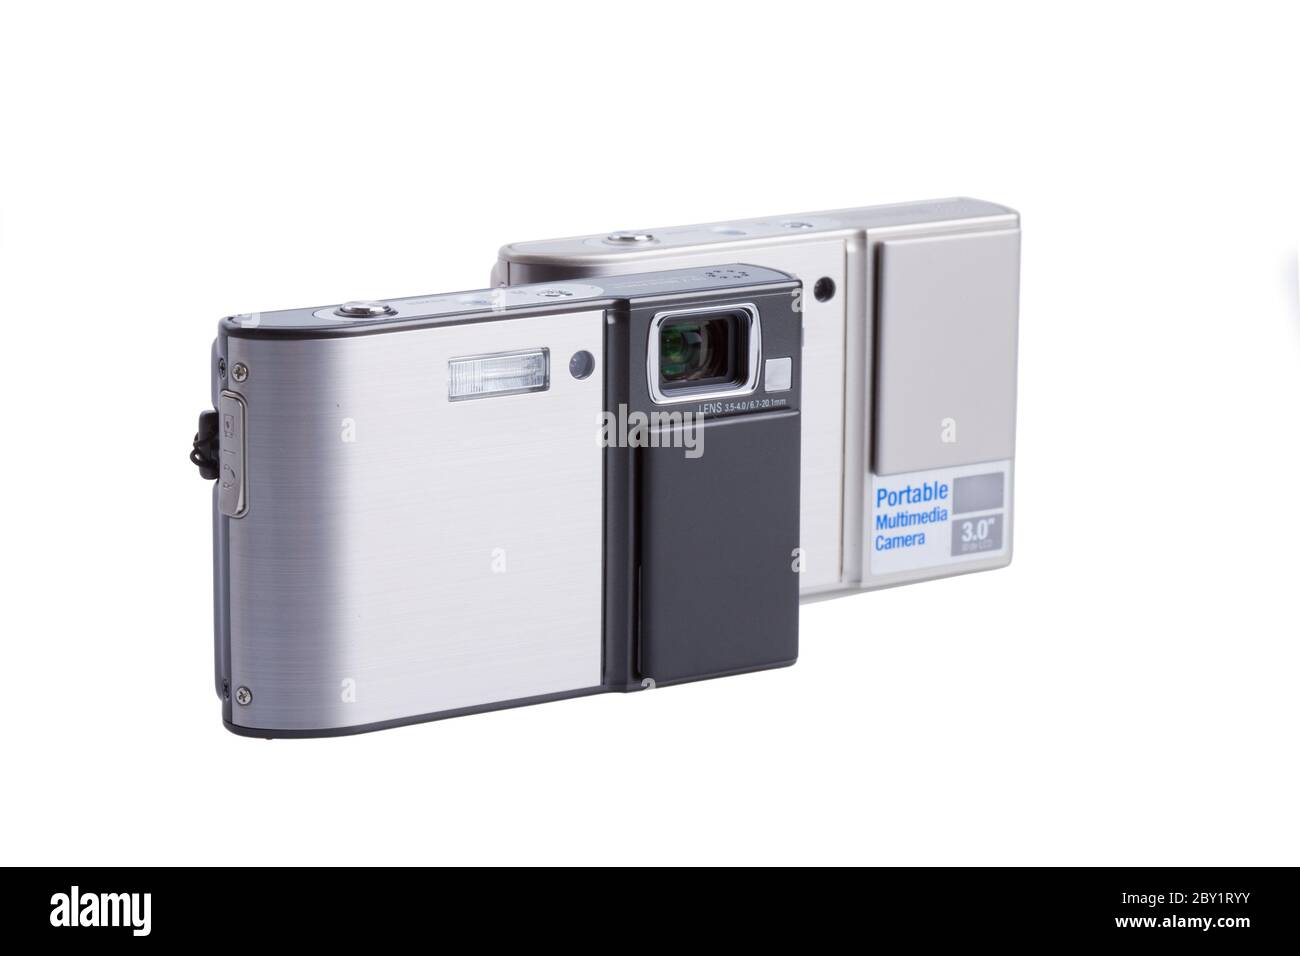 photo camera isolated on white Stock Photo